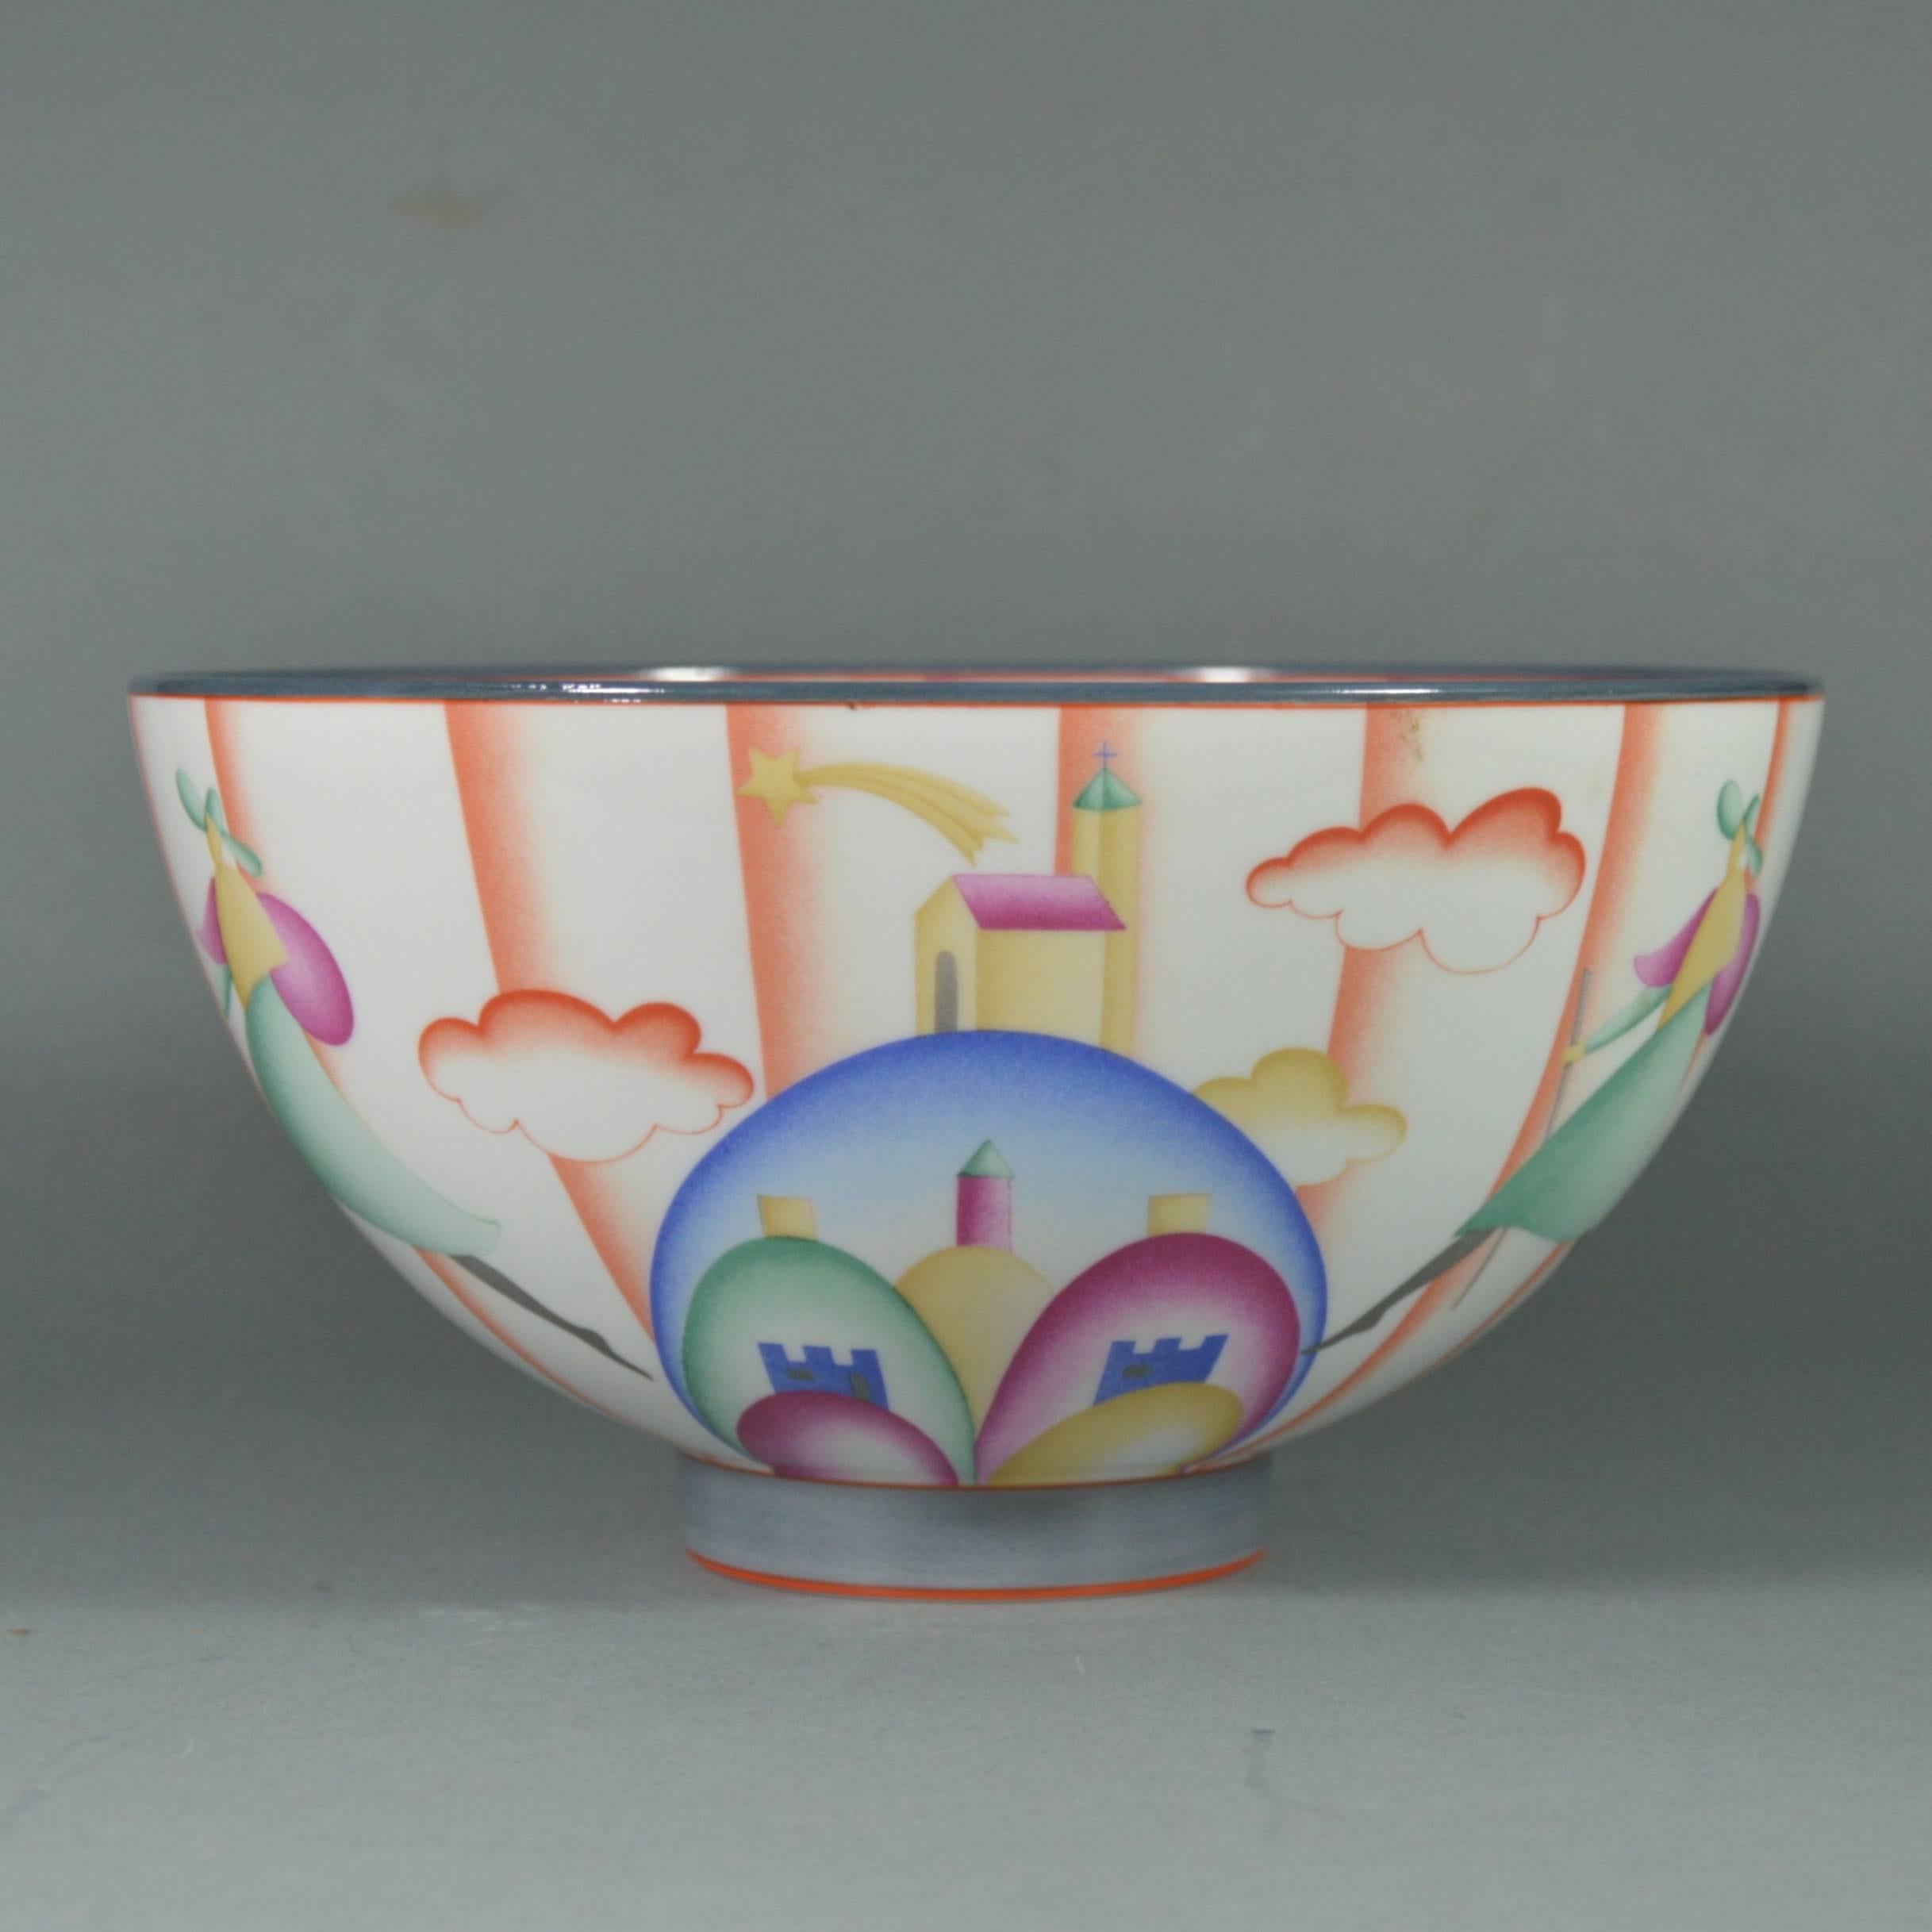 Art Deco porcelain bowl - Il Pellegrino di Montesanto by Gio Ponti (1891-1979), circa 1925.